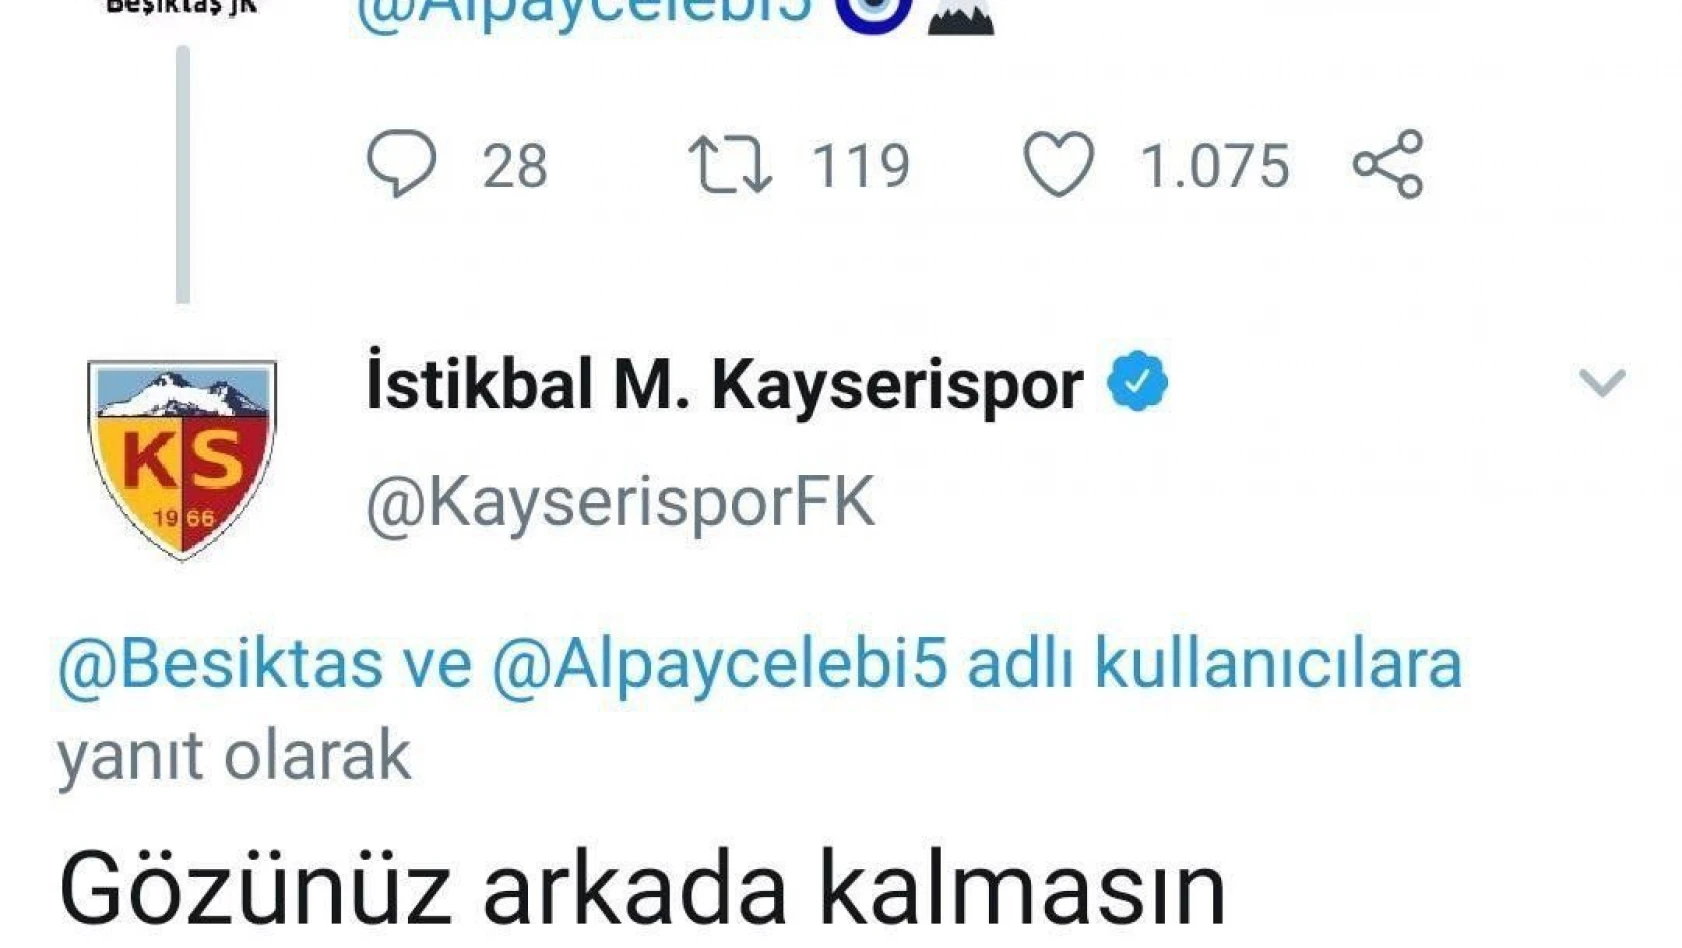  Kayserispor'dan Beşiktaş'a:  'O artık bizden biri' 